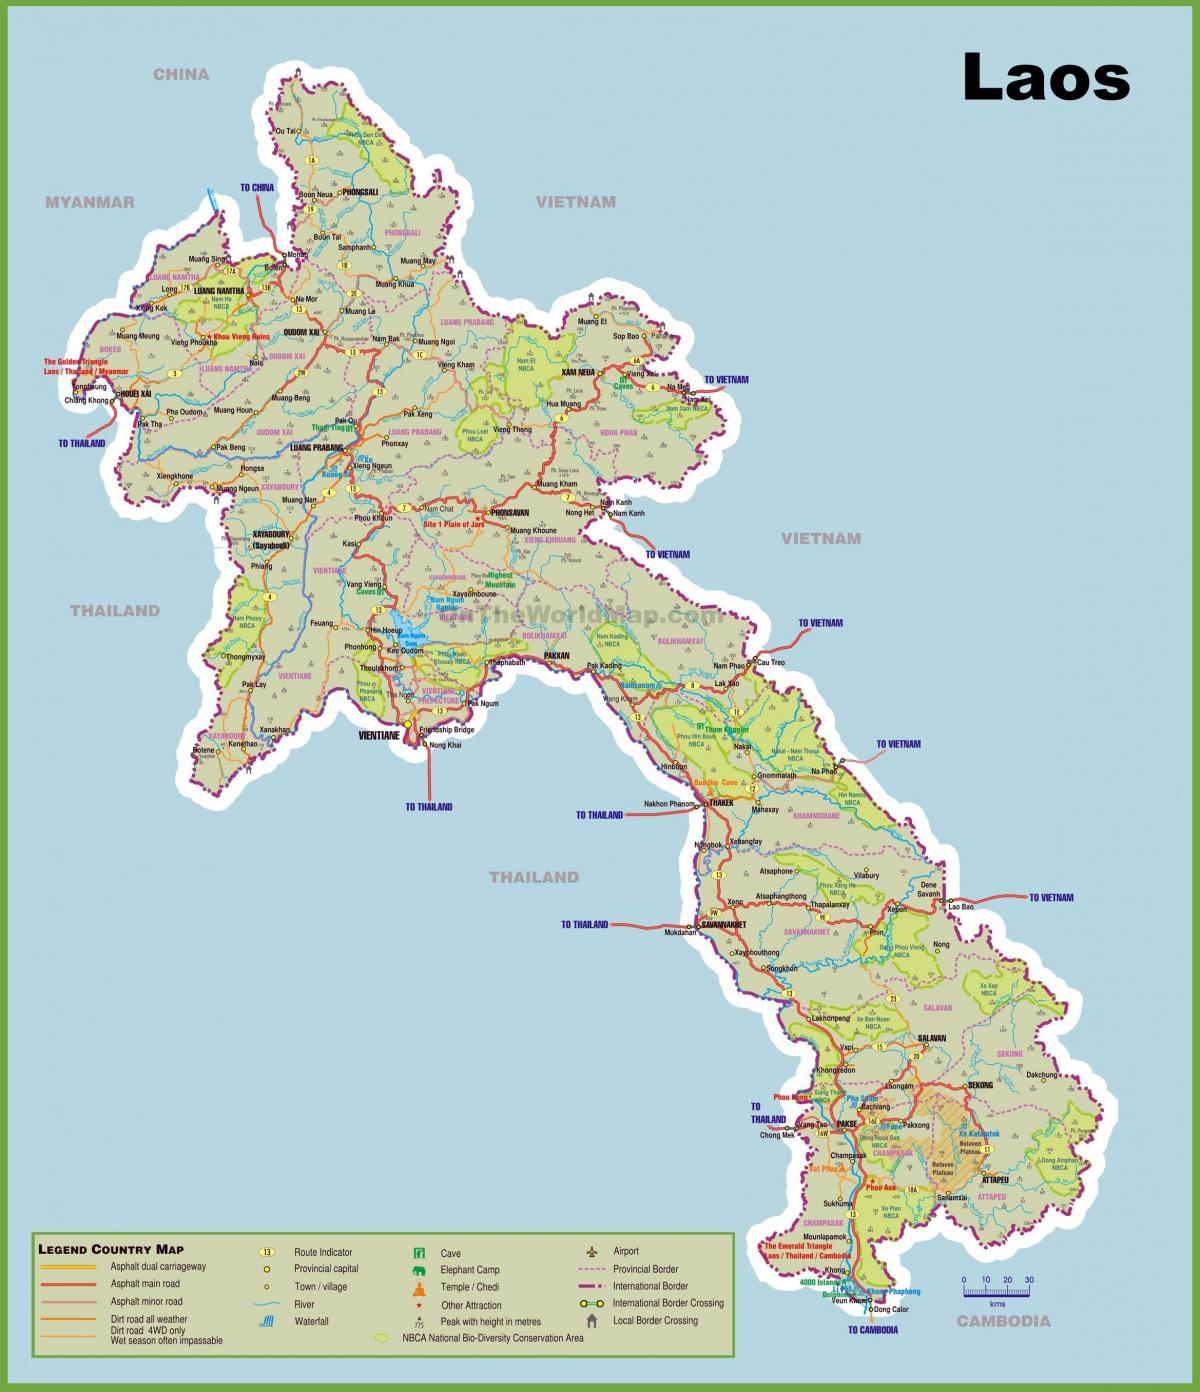 laos turistik haritası